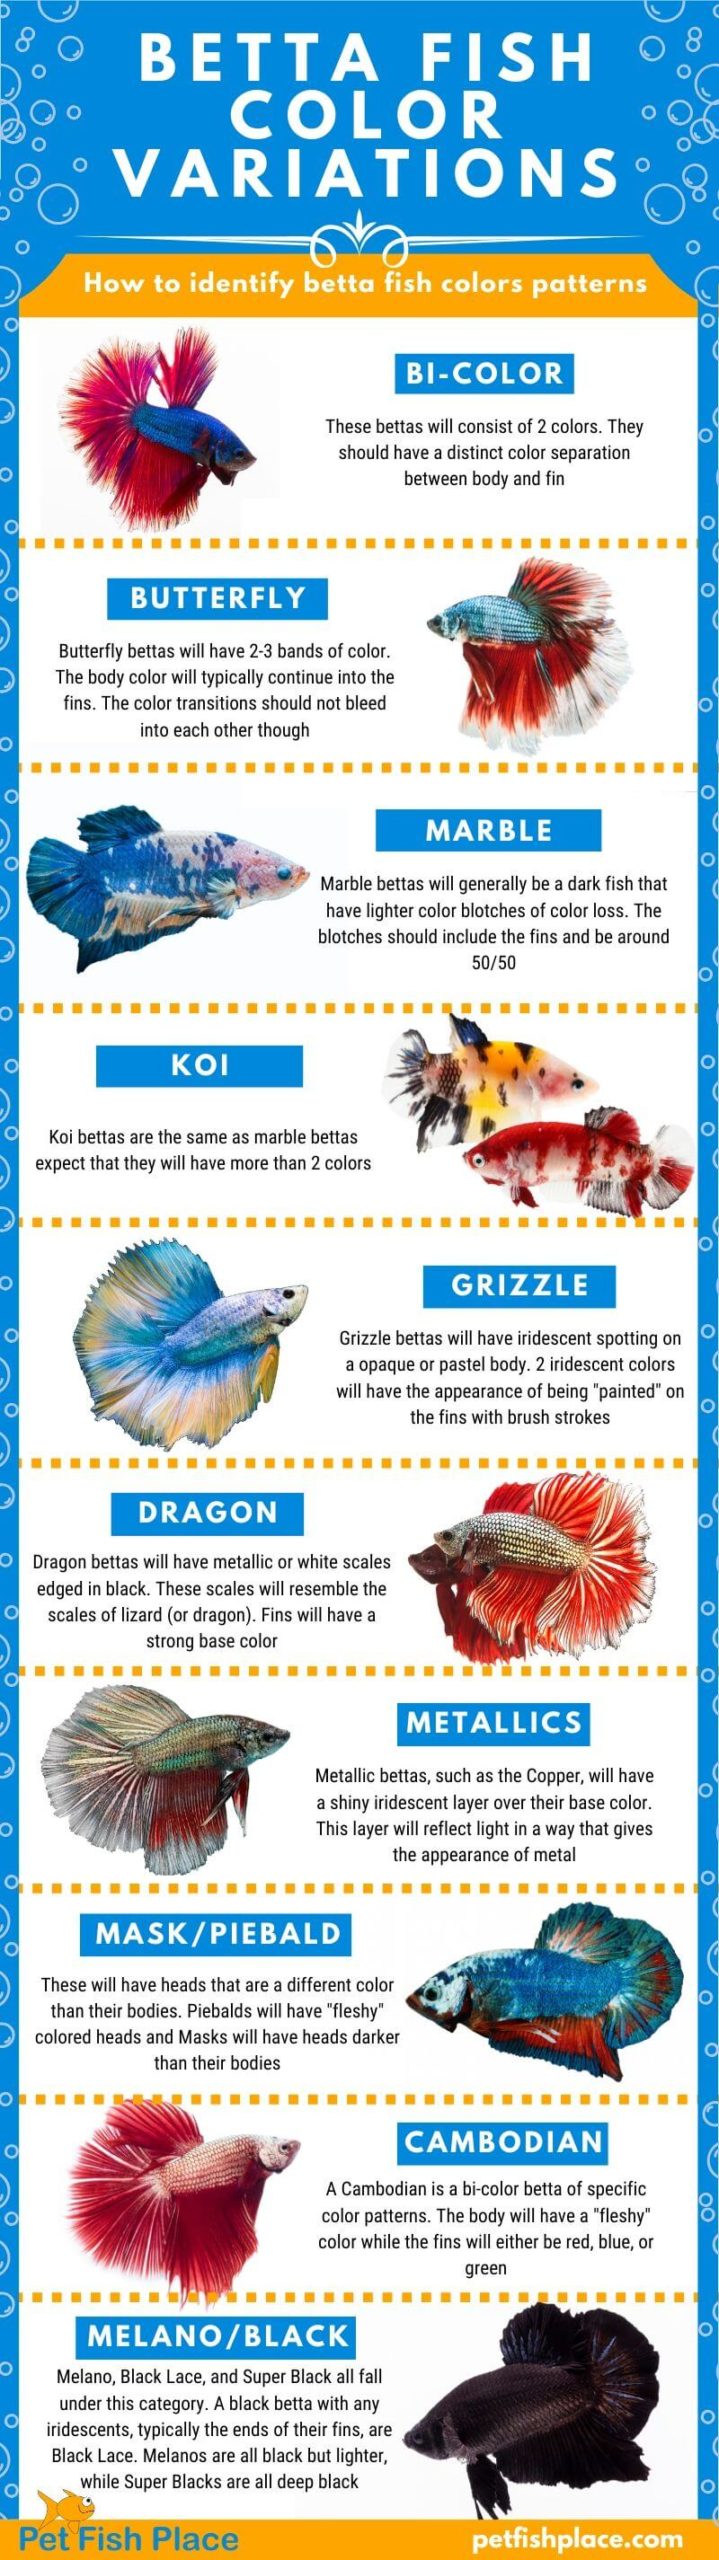 Betta Fish Color Variations